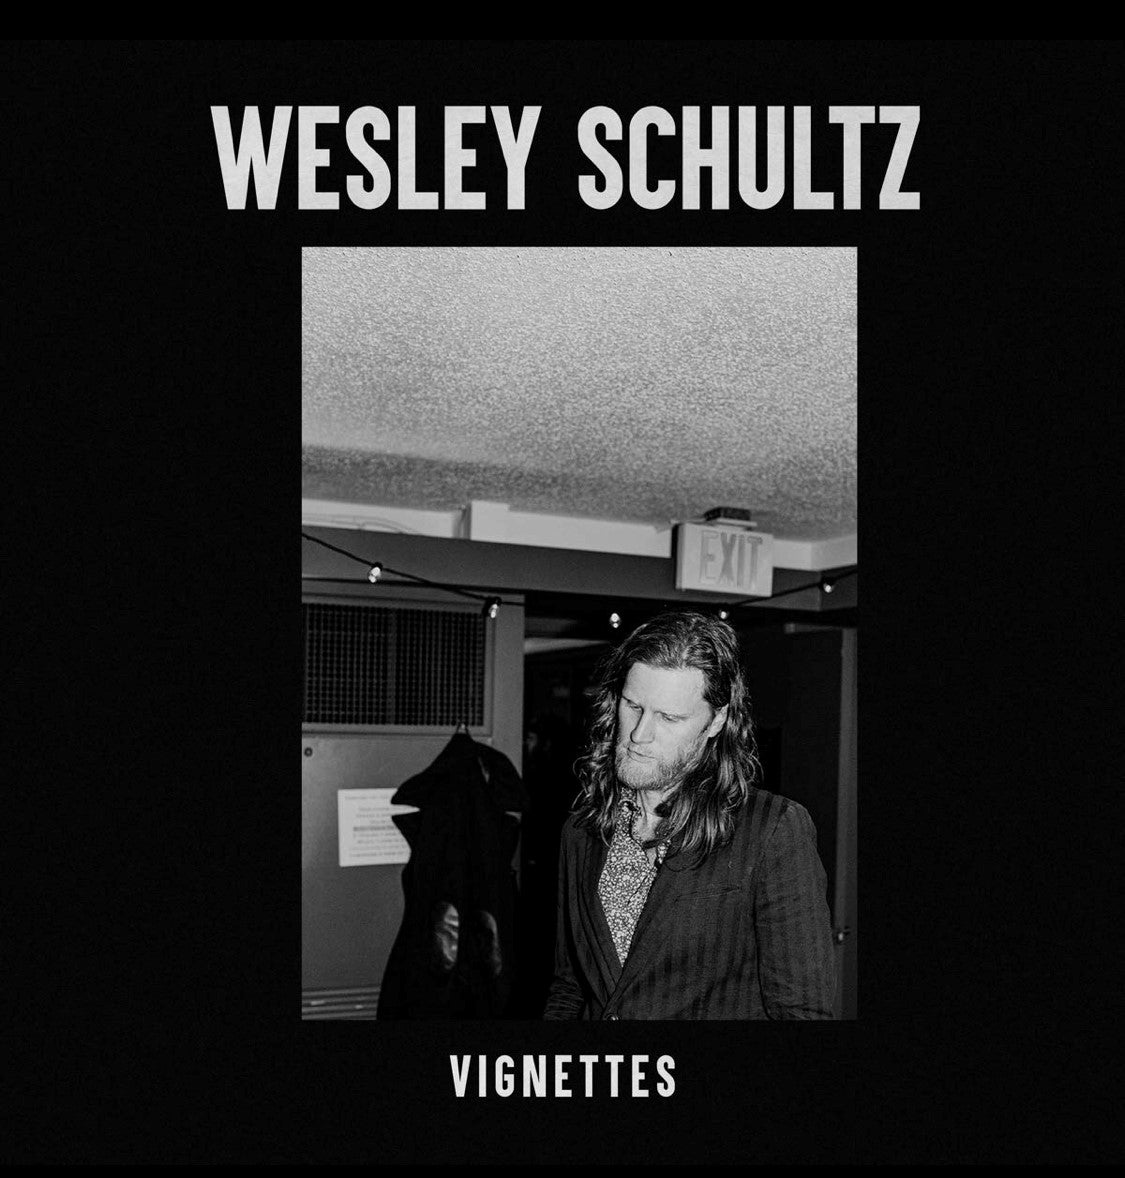 WESLEY SCHULTZ - Vignettes - LP - Vinyl